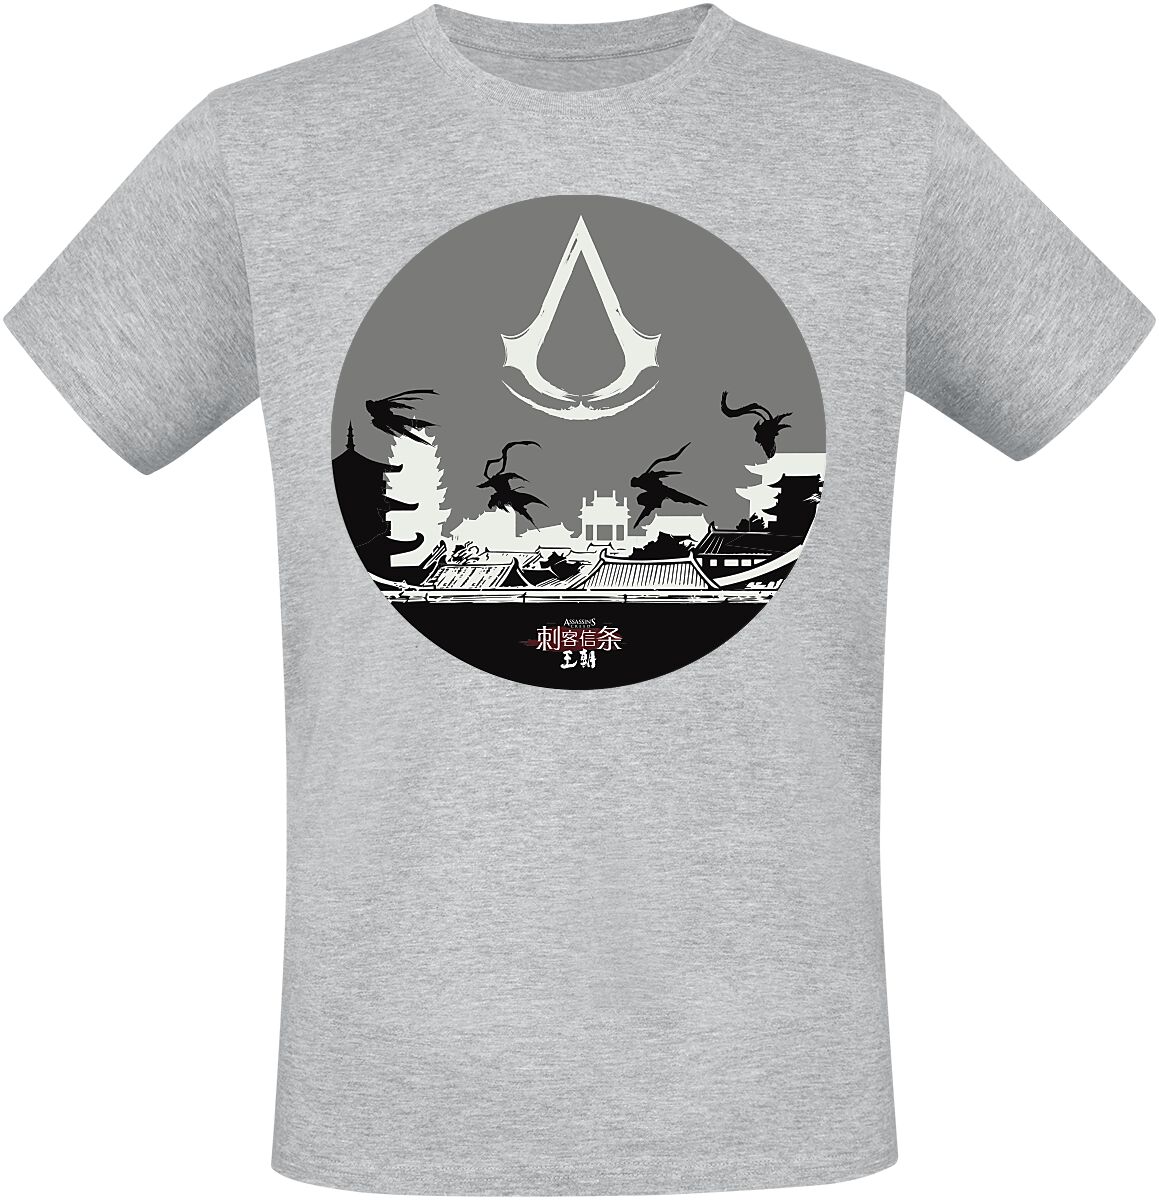 Assassin`s Creed - Gaming T-Shirt - Dynasty - Circle - S bis L - für Männer - Größe M - grau meliert  - EMP exklusives Merchandise!